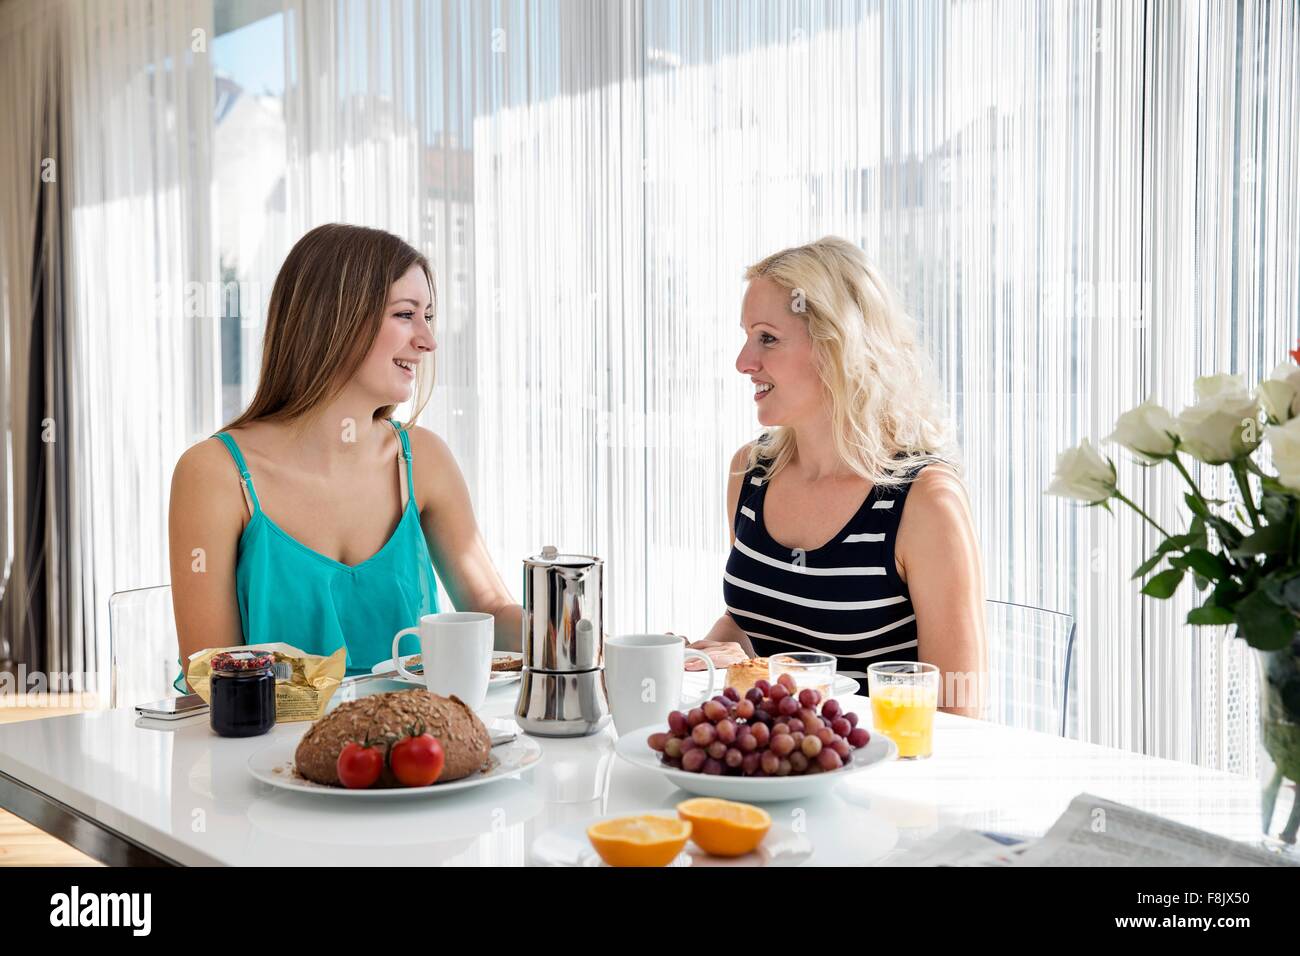 Les femmes assis à table à manger bénéficiant d''un petit-déjeuner ensemble, face à face, smiling Banque D'Images